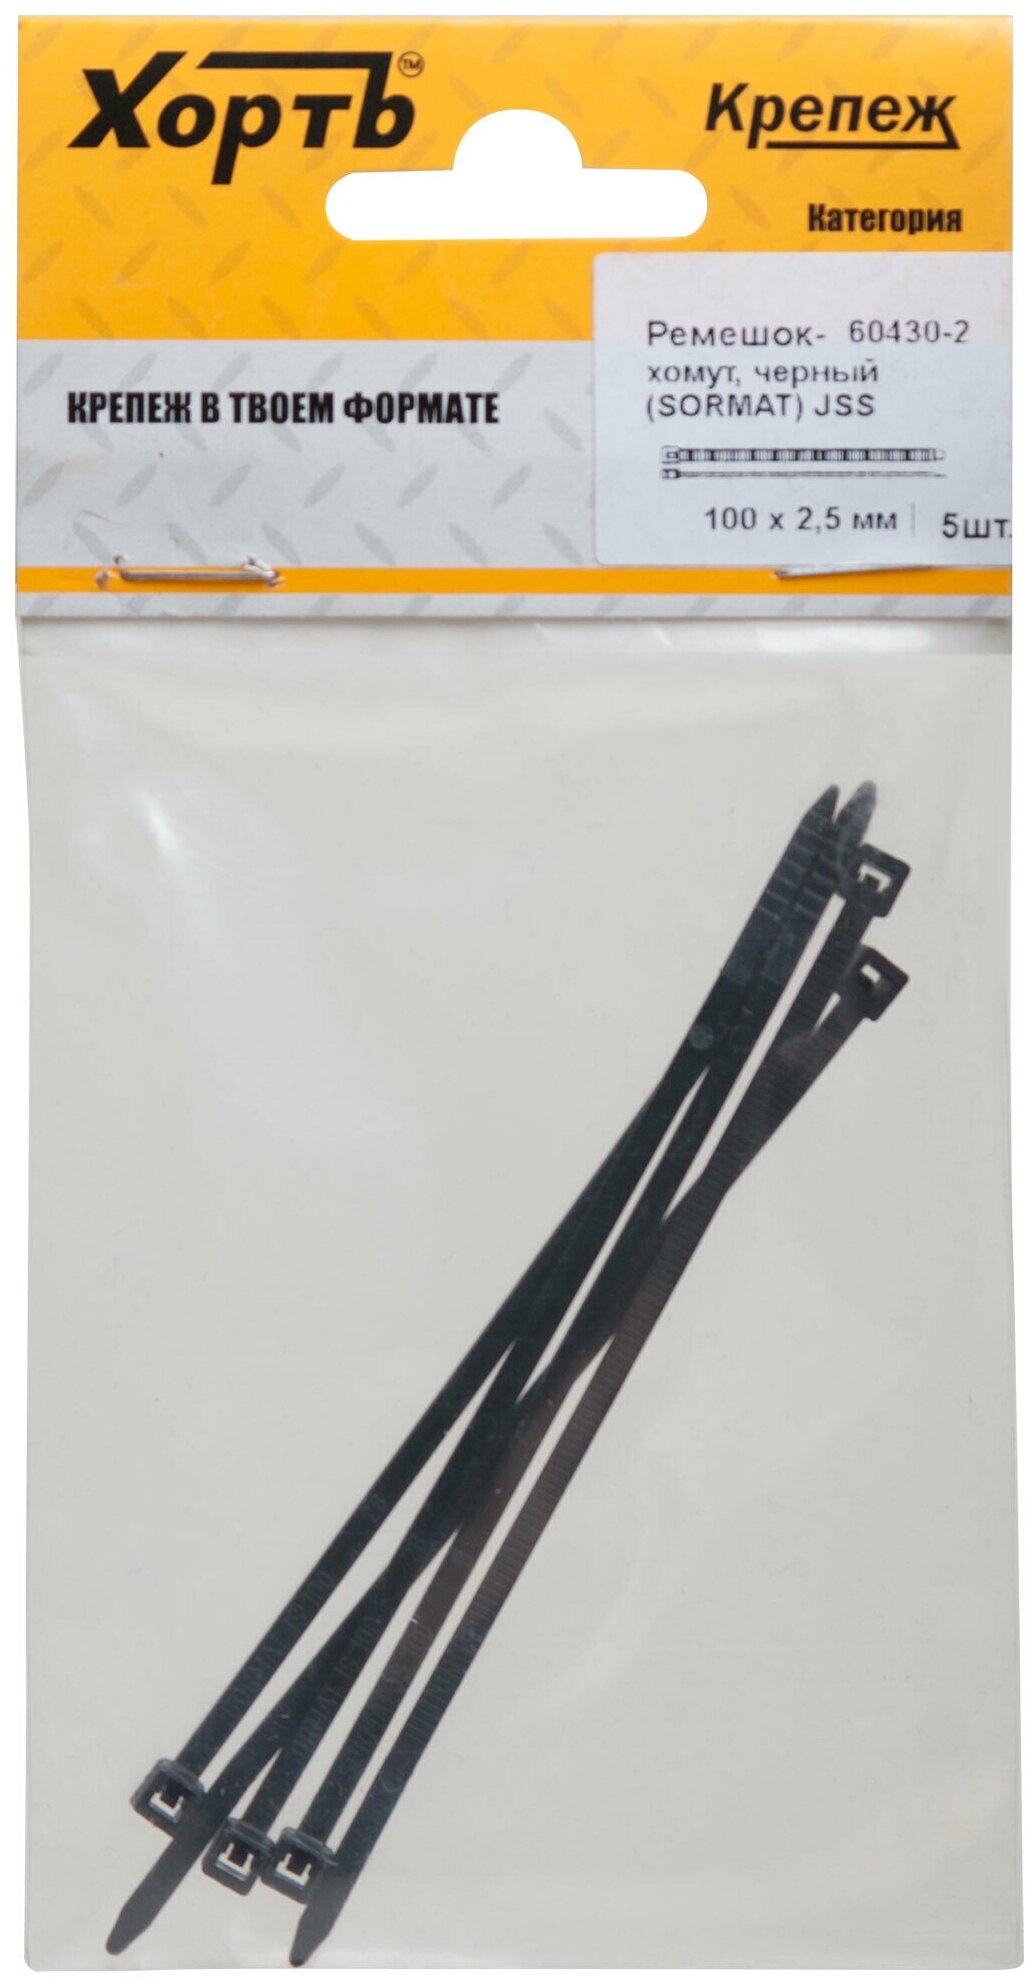 Ремешок-хомут черный (SORMAT) JSS 100 х 25 мм (фасовка 5 шт.)